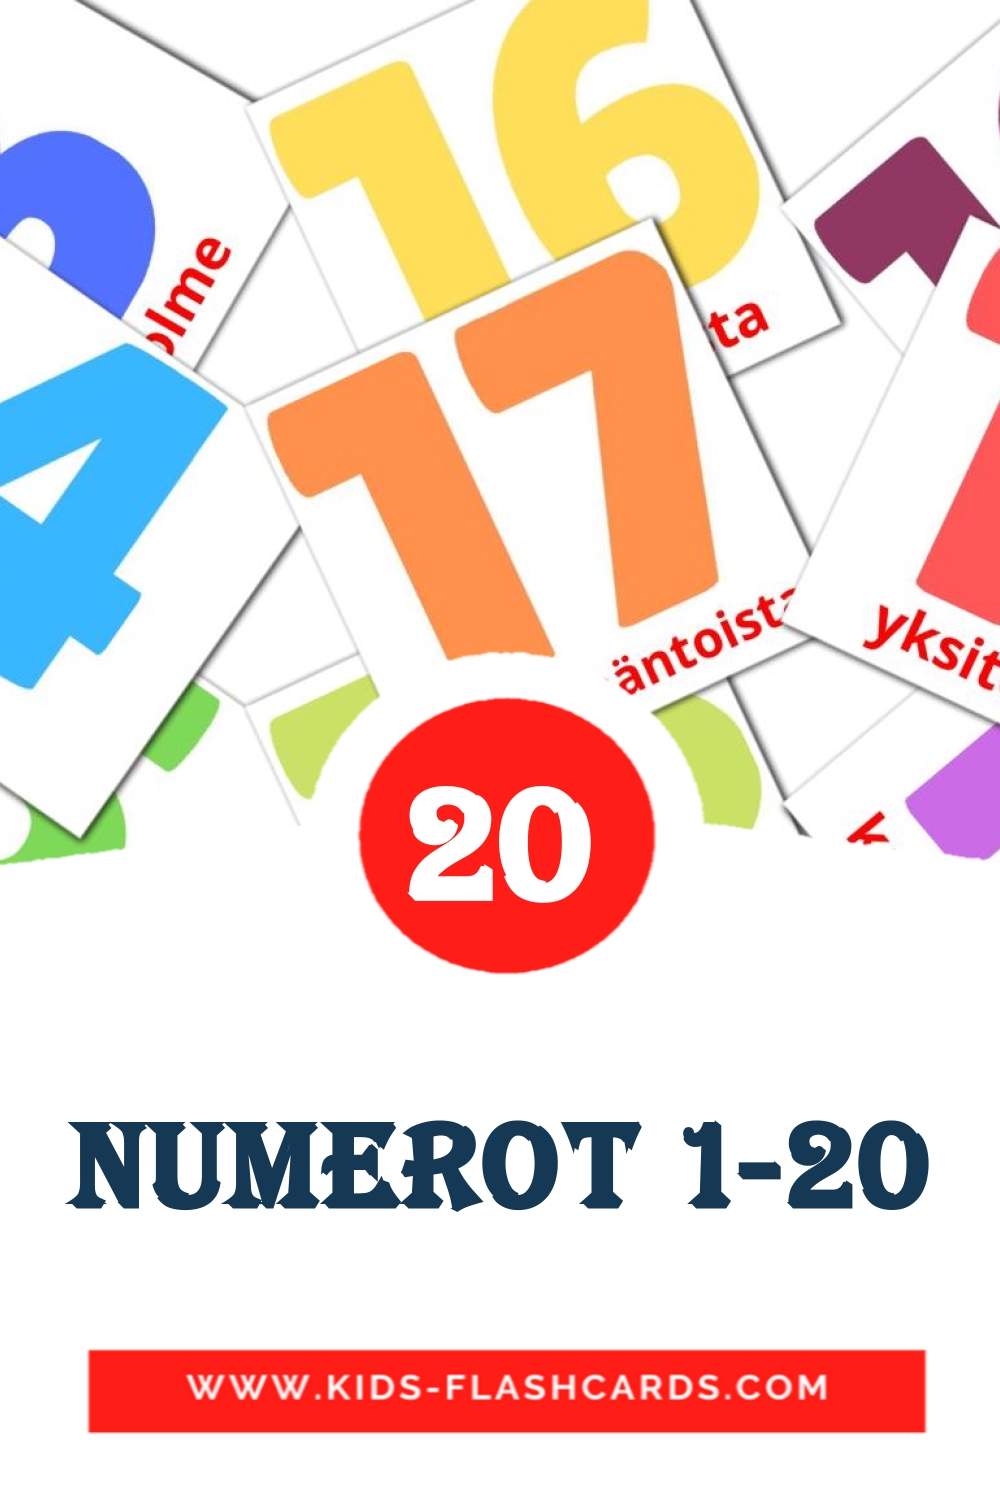 Numerot 1-20 на финском для Детского Сада (20 карточек)